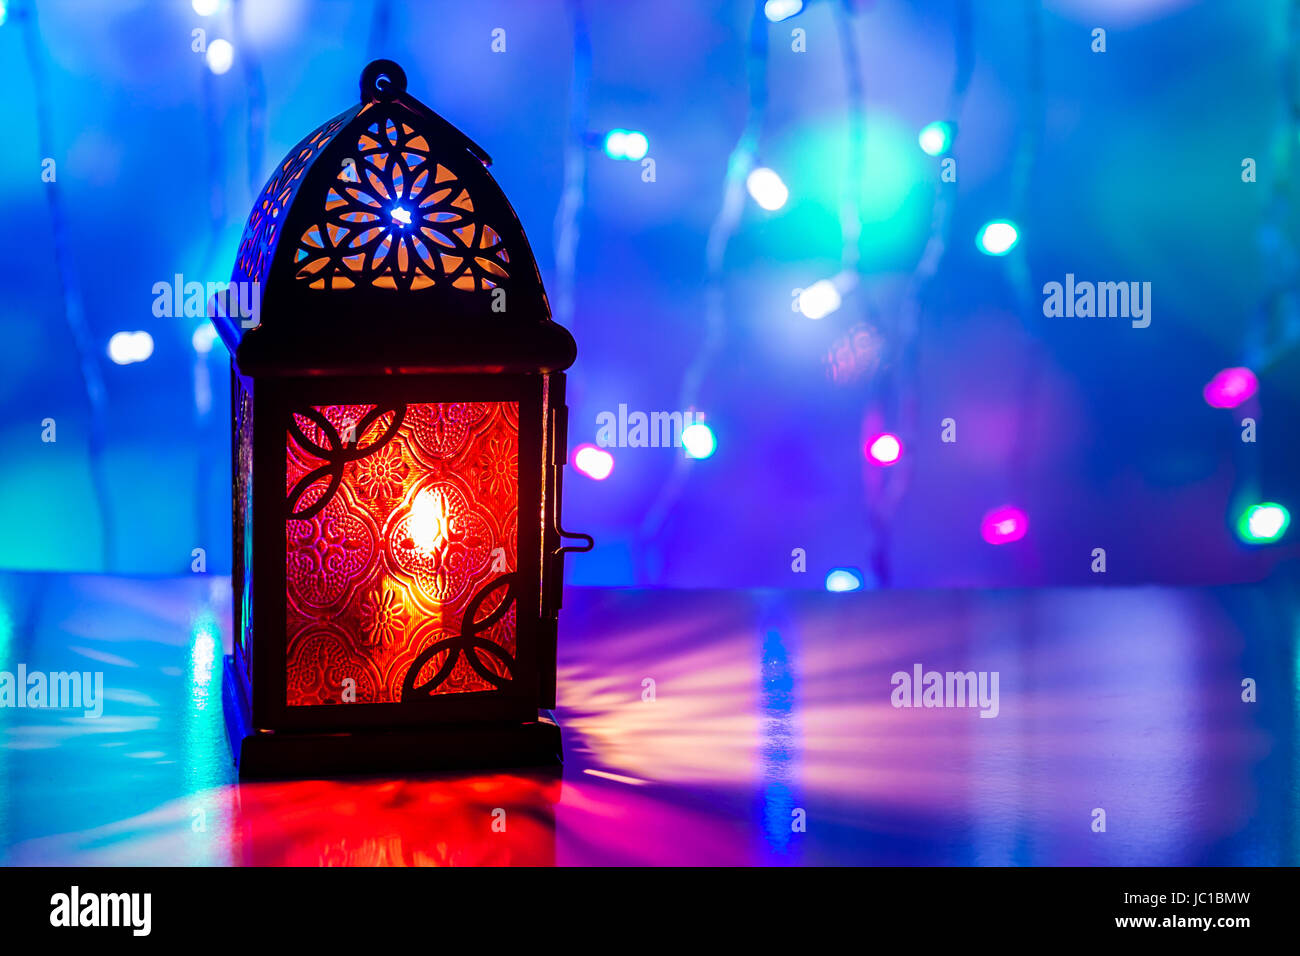 Allumé L'Arabe lanterne en arrière-plan coloré. Ramadan, Eid concept arrière-plan. Banque D'Images